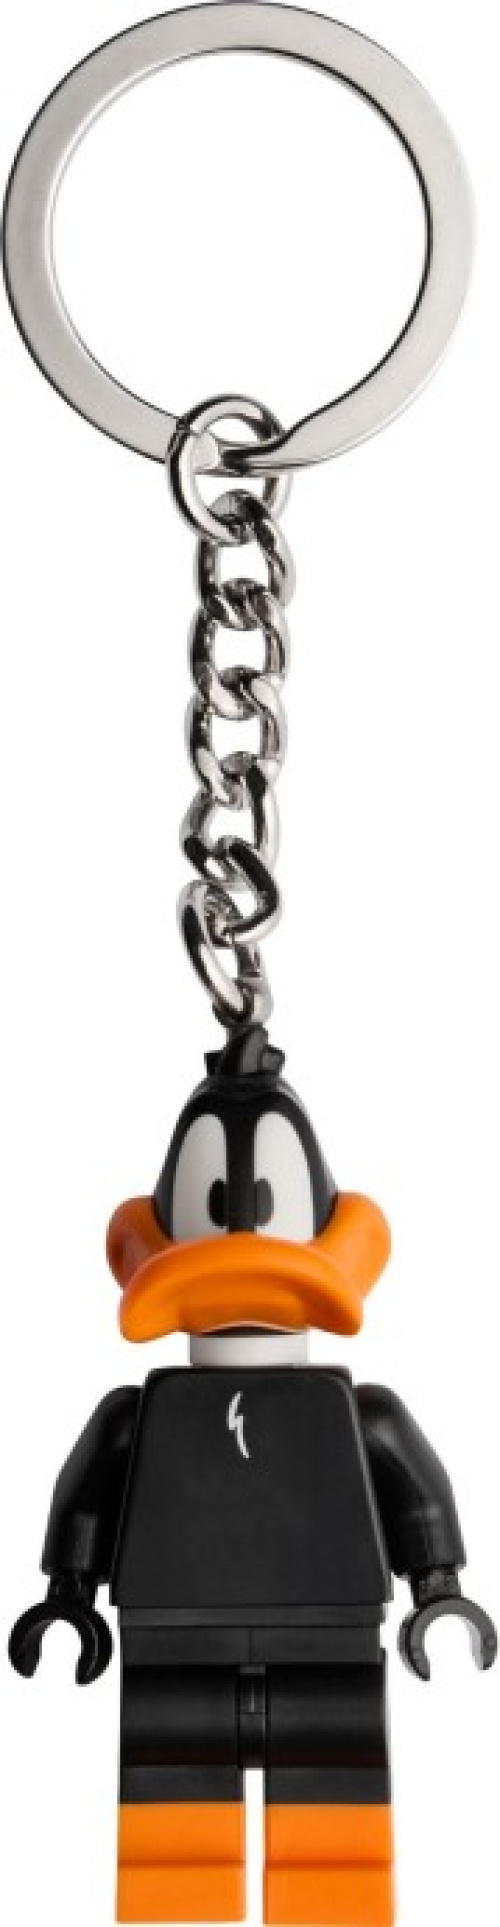 854199-1 Daffy Duck Key Chain